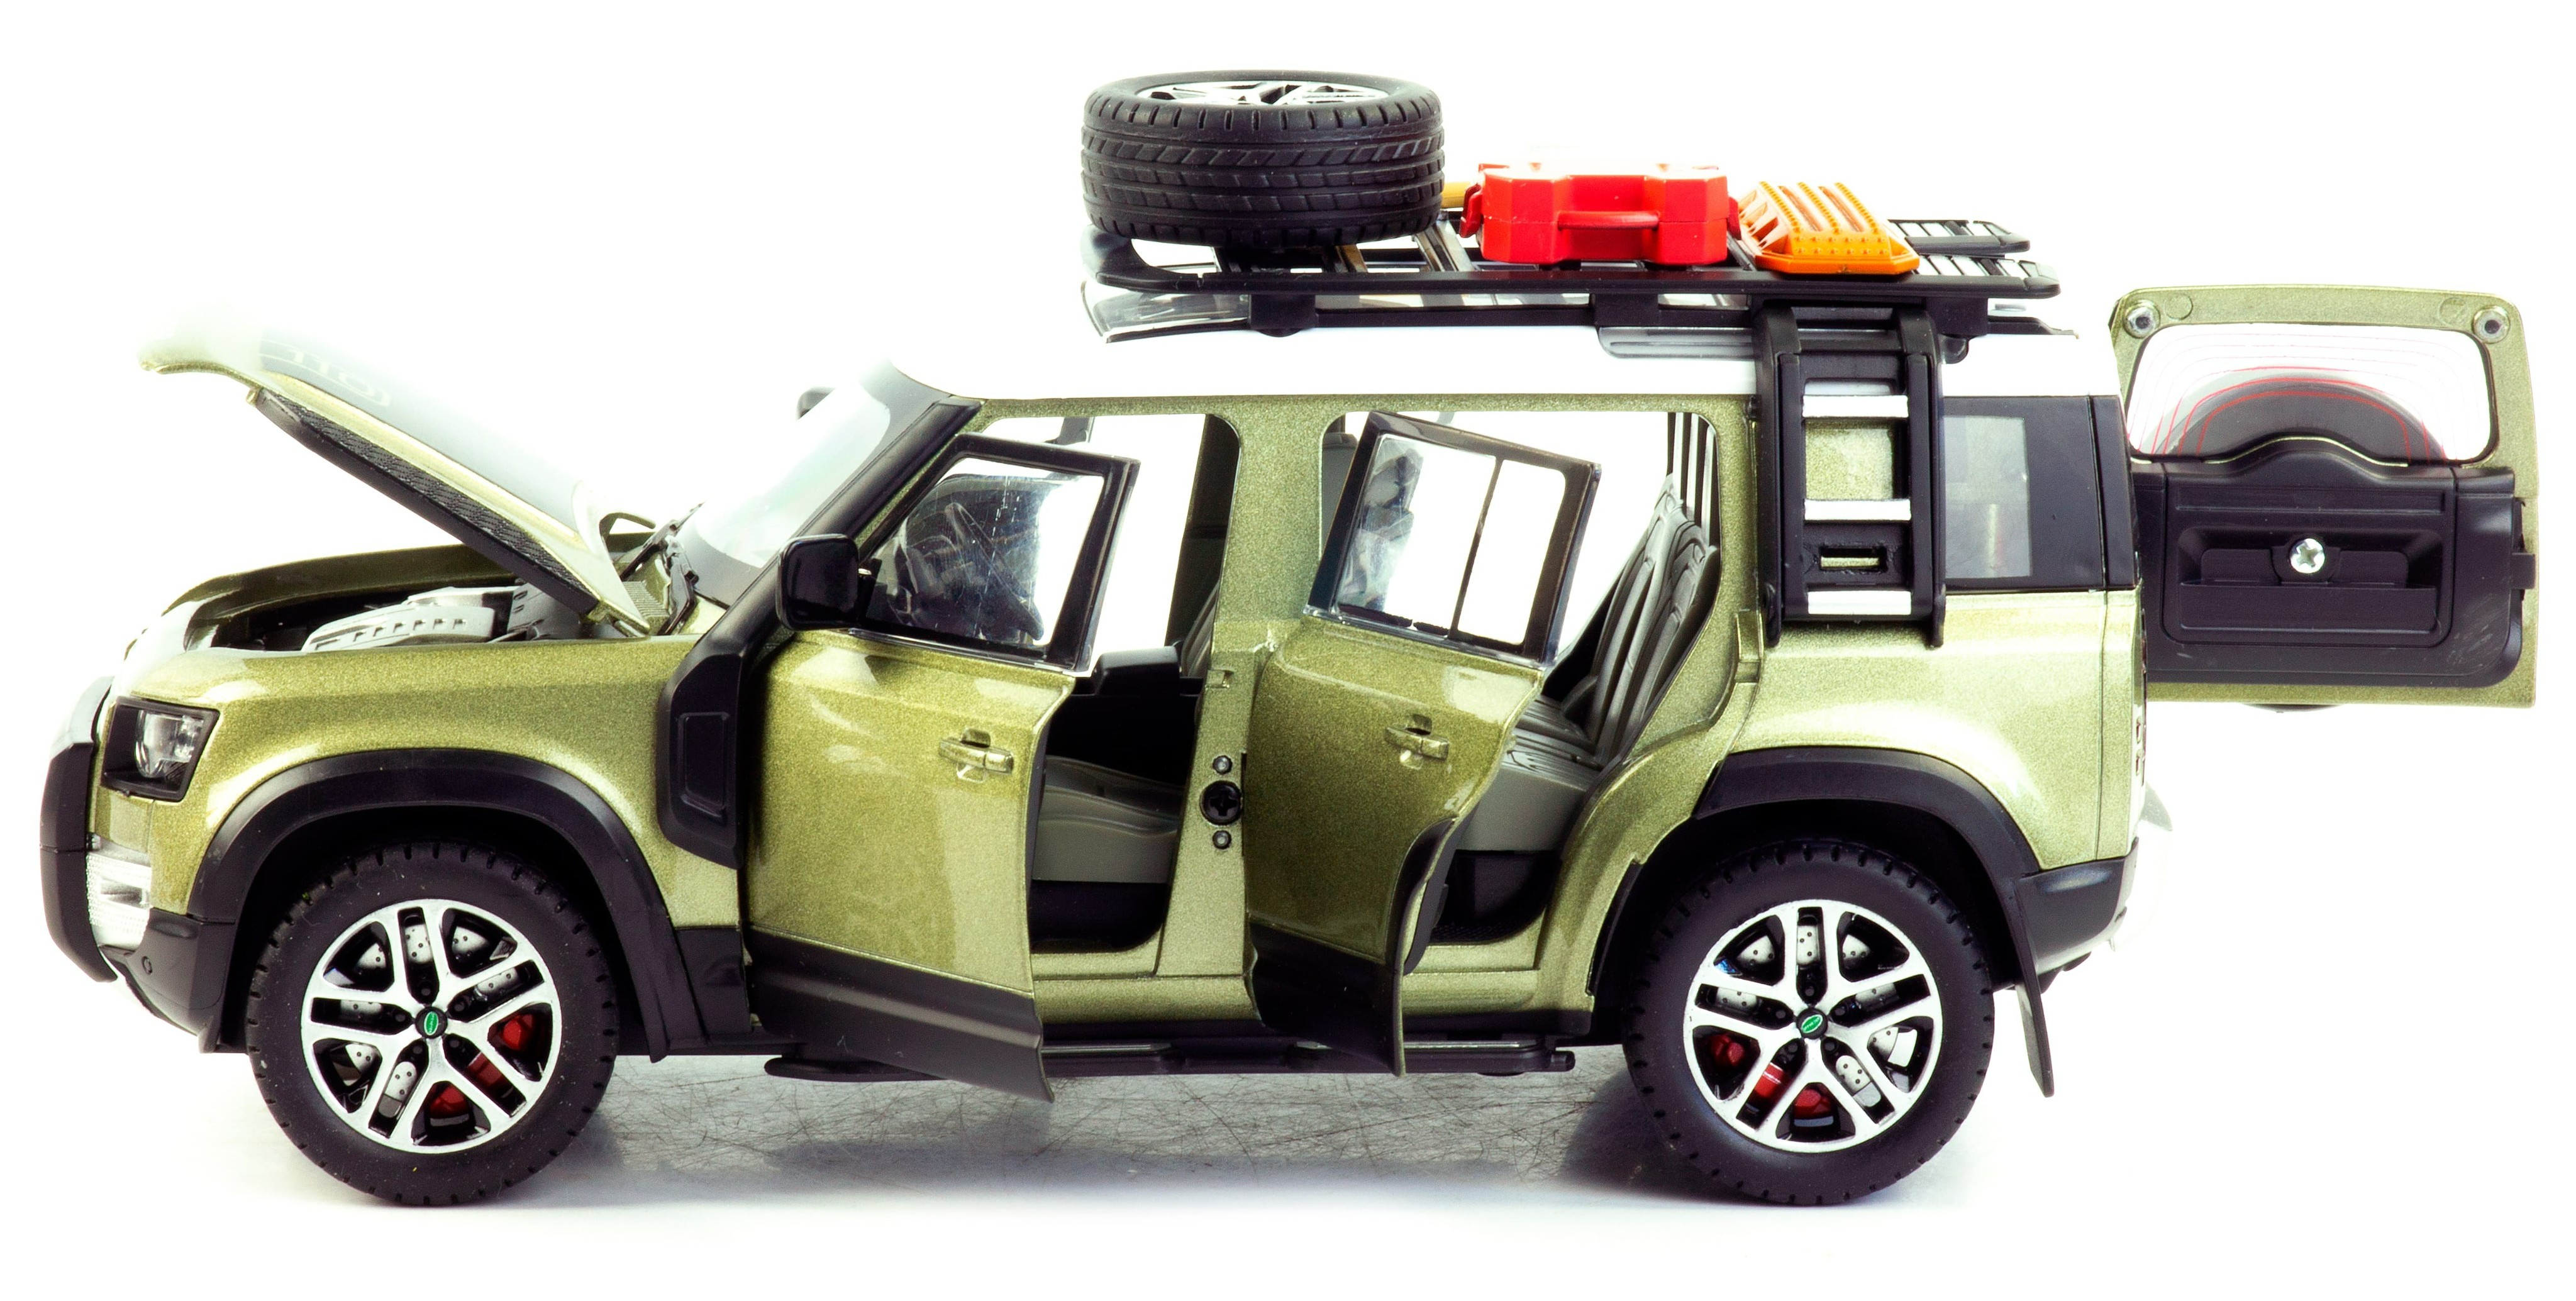 Металлическая машинка Minyore 1:22 «Land Rover Defender 110SH» 0783-346, 22 см., звук, свет, инерционная / Золотистый